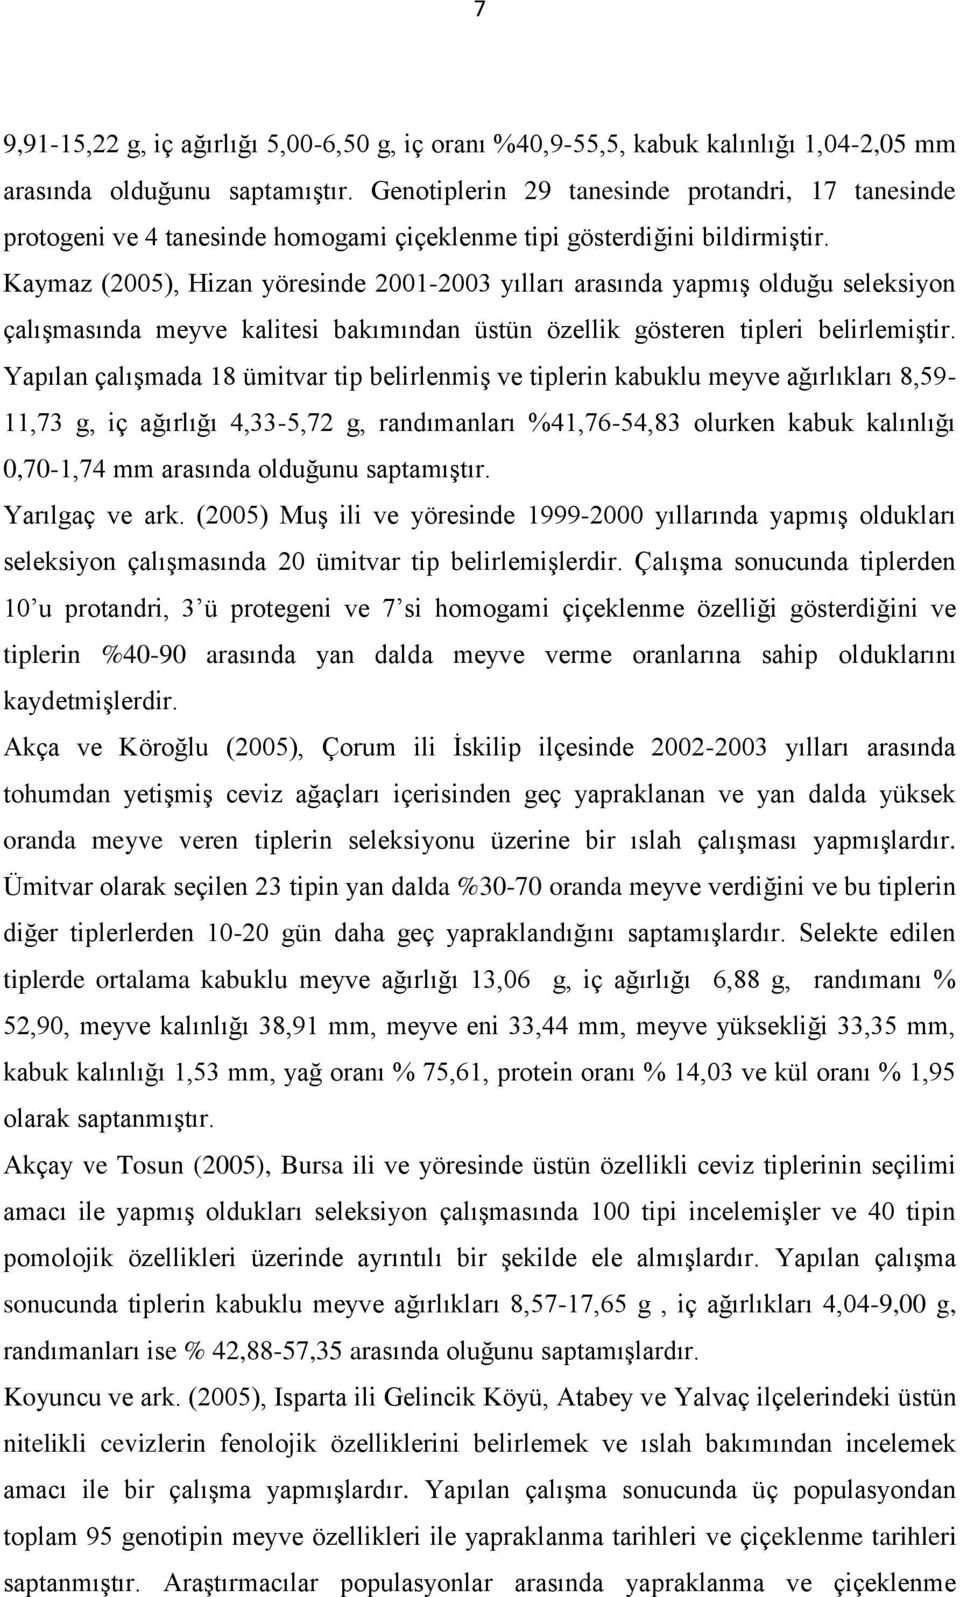 Kaymaz (2005), Hizan yöresinde 2001-2003 yılları arasında yapmış olduğu seleksiyon çalışmasında meyve kalitesi bakımından üstün özellik gösteren tipleri belirlemiştir.